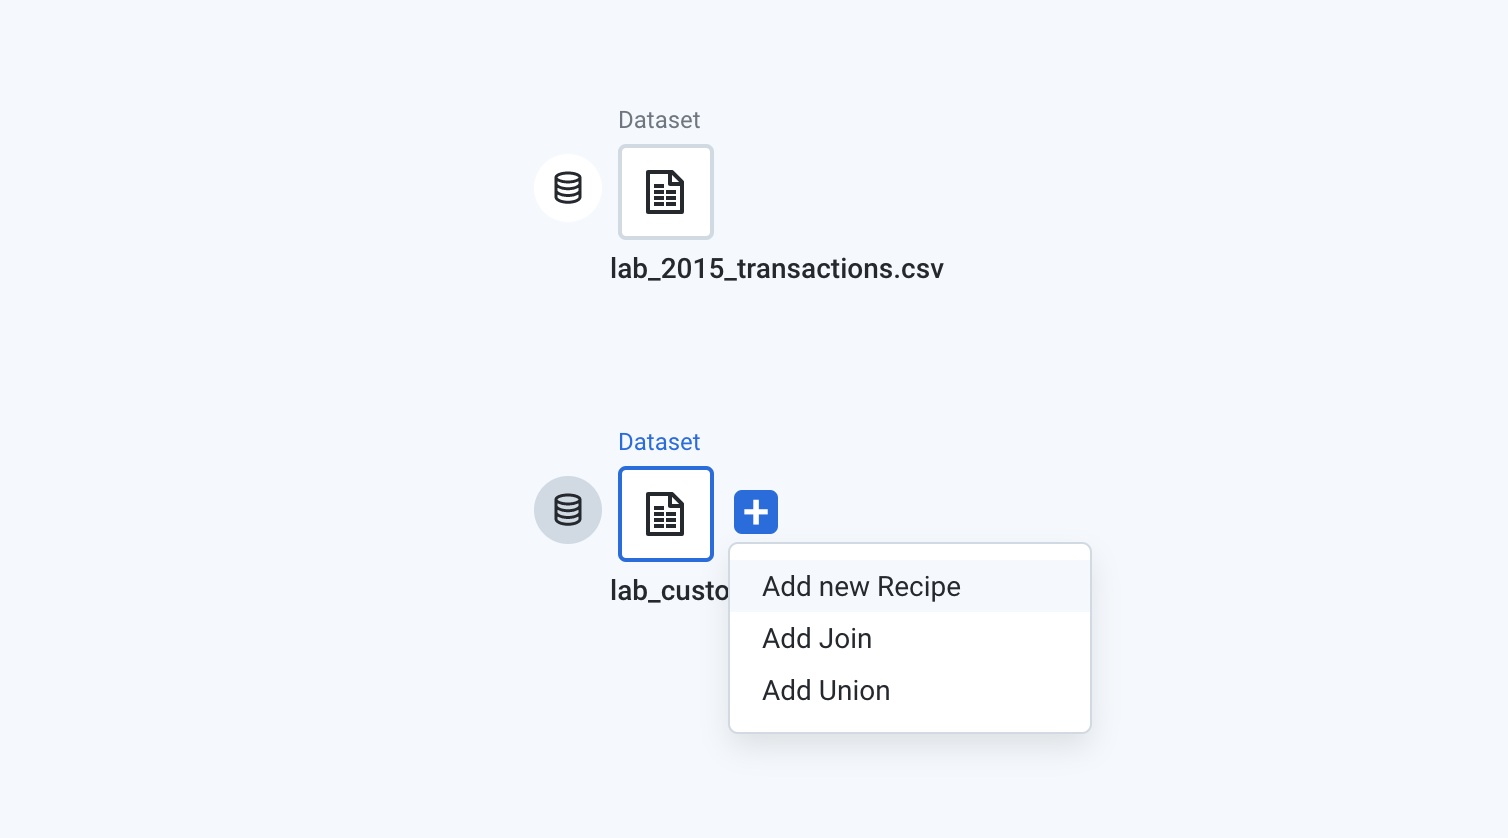 2 conjuntos de dados, lab_2015_transactions.csv e lab_customers.csv, com o menu expandido exibido para lab_customers.csv